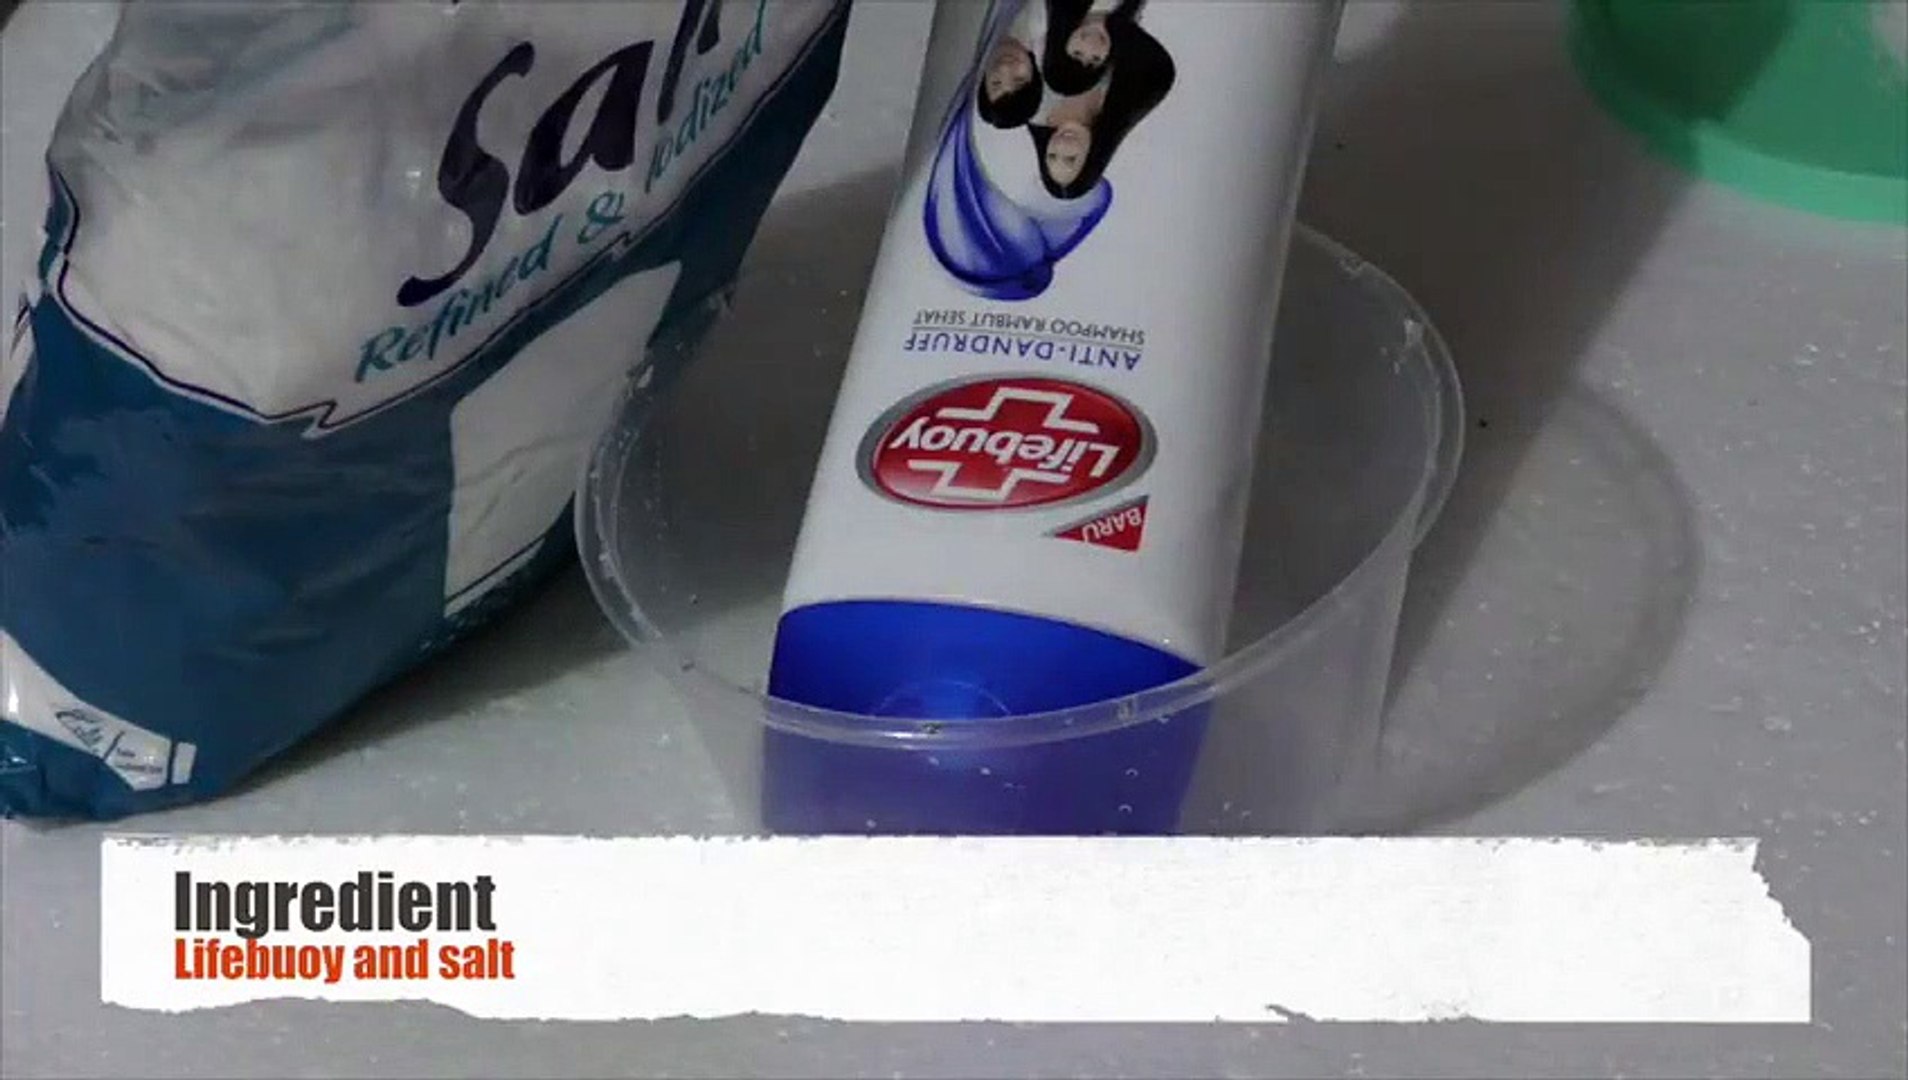 How To Make Slime With Lifebuoy Shampoo And Salt Slime With Lifebuoy And Salt